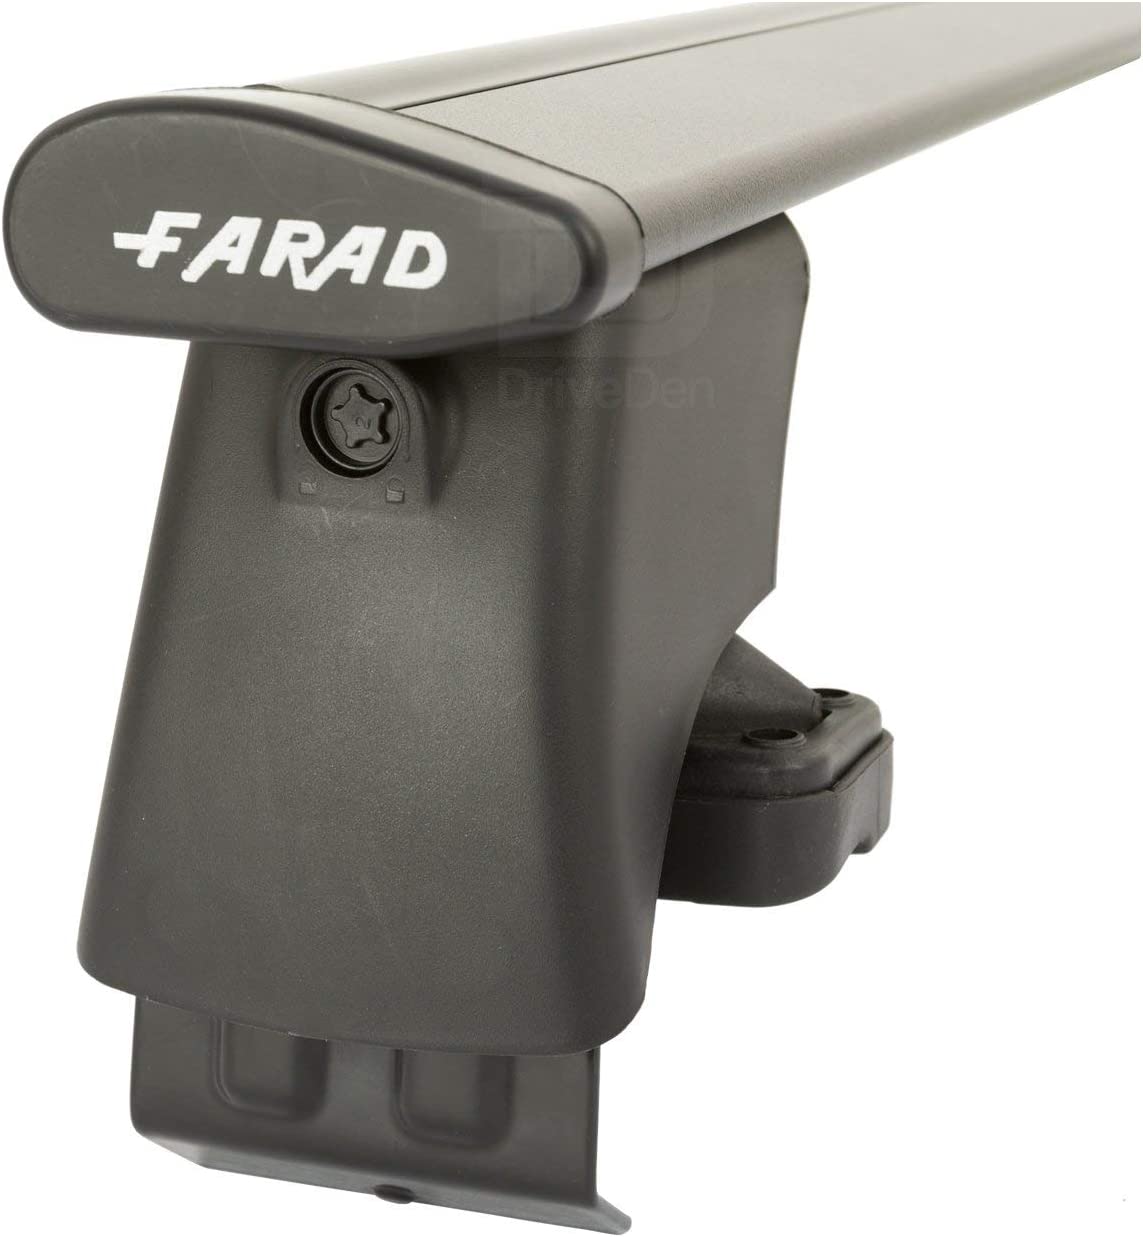 FARAD-Kit H2 per barre portatutto - Audi A4 2001-2007 (senza corrimano)